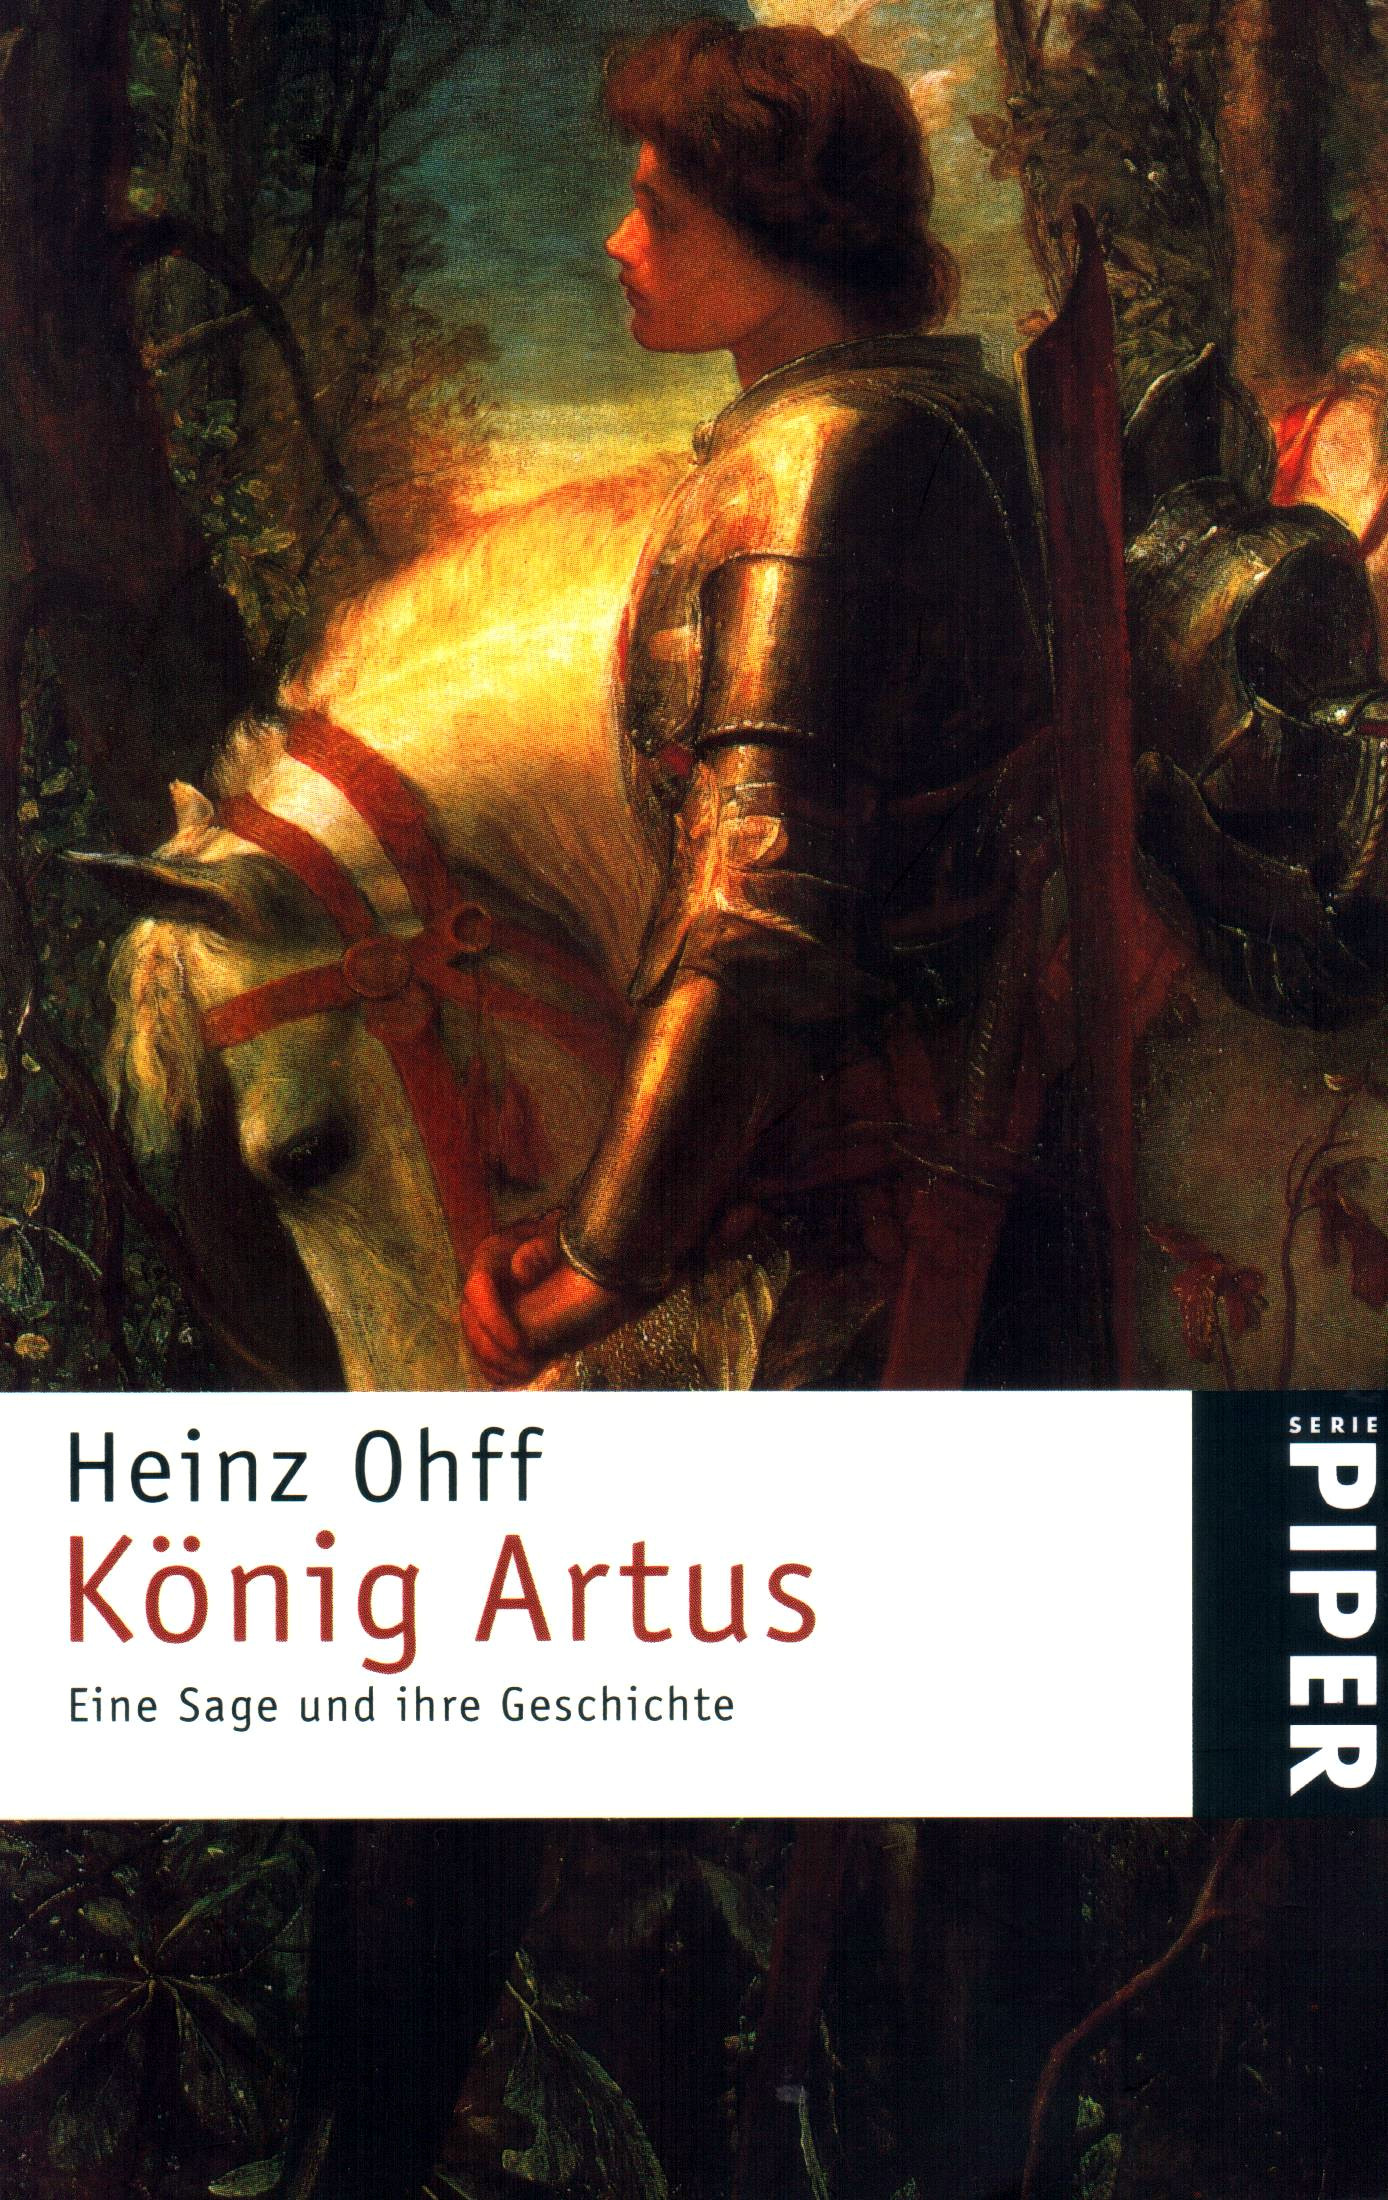 König Artus – Eine Sage und ihre Geschichte